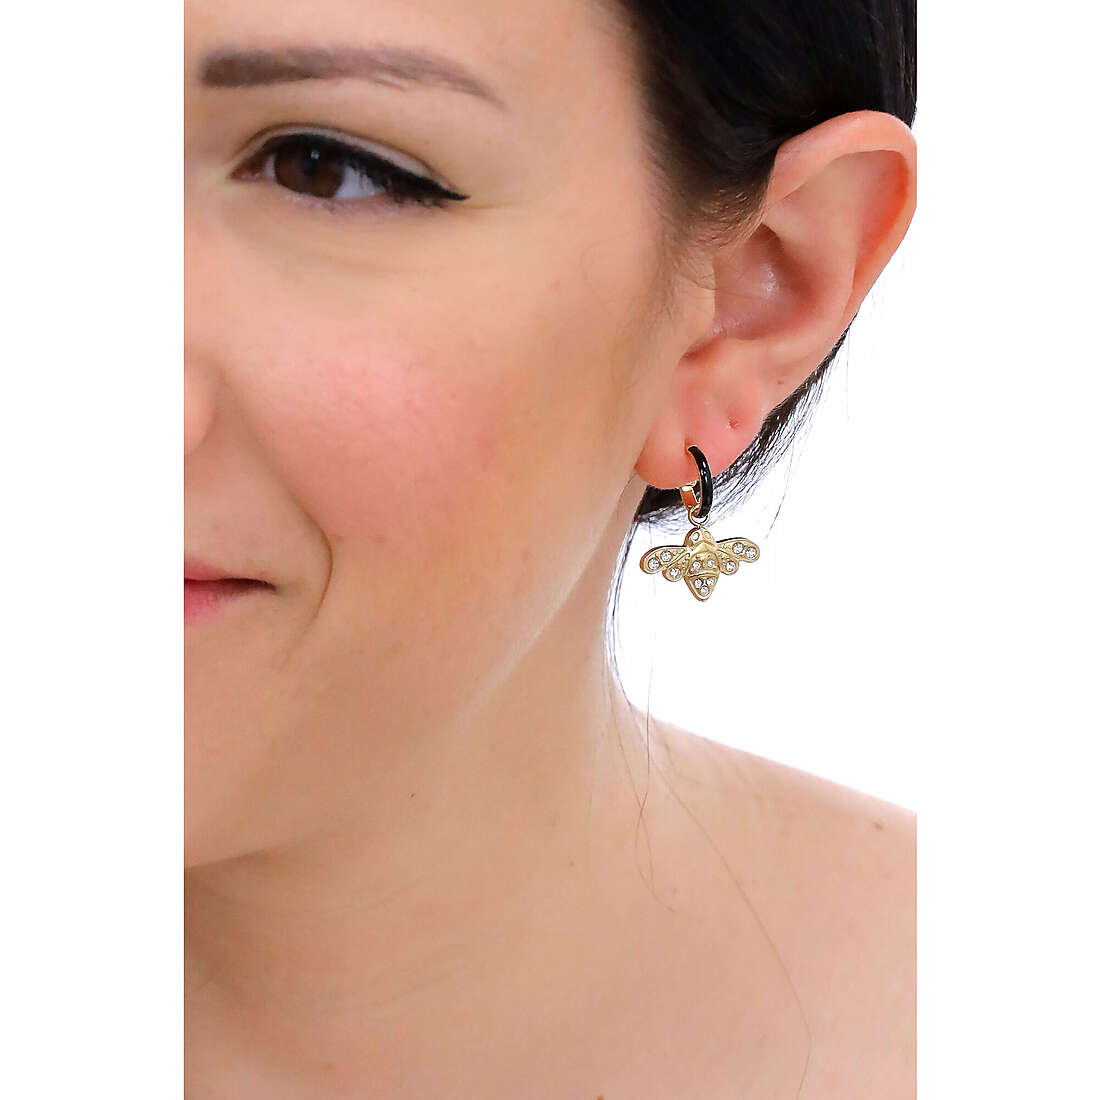 Liujo earrings Teen woman LJ1891 wearing